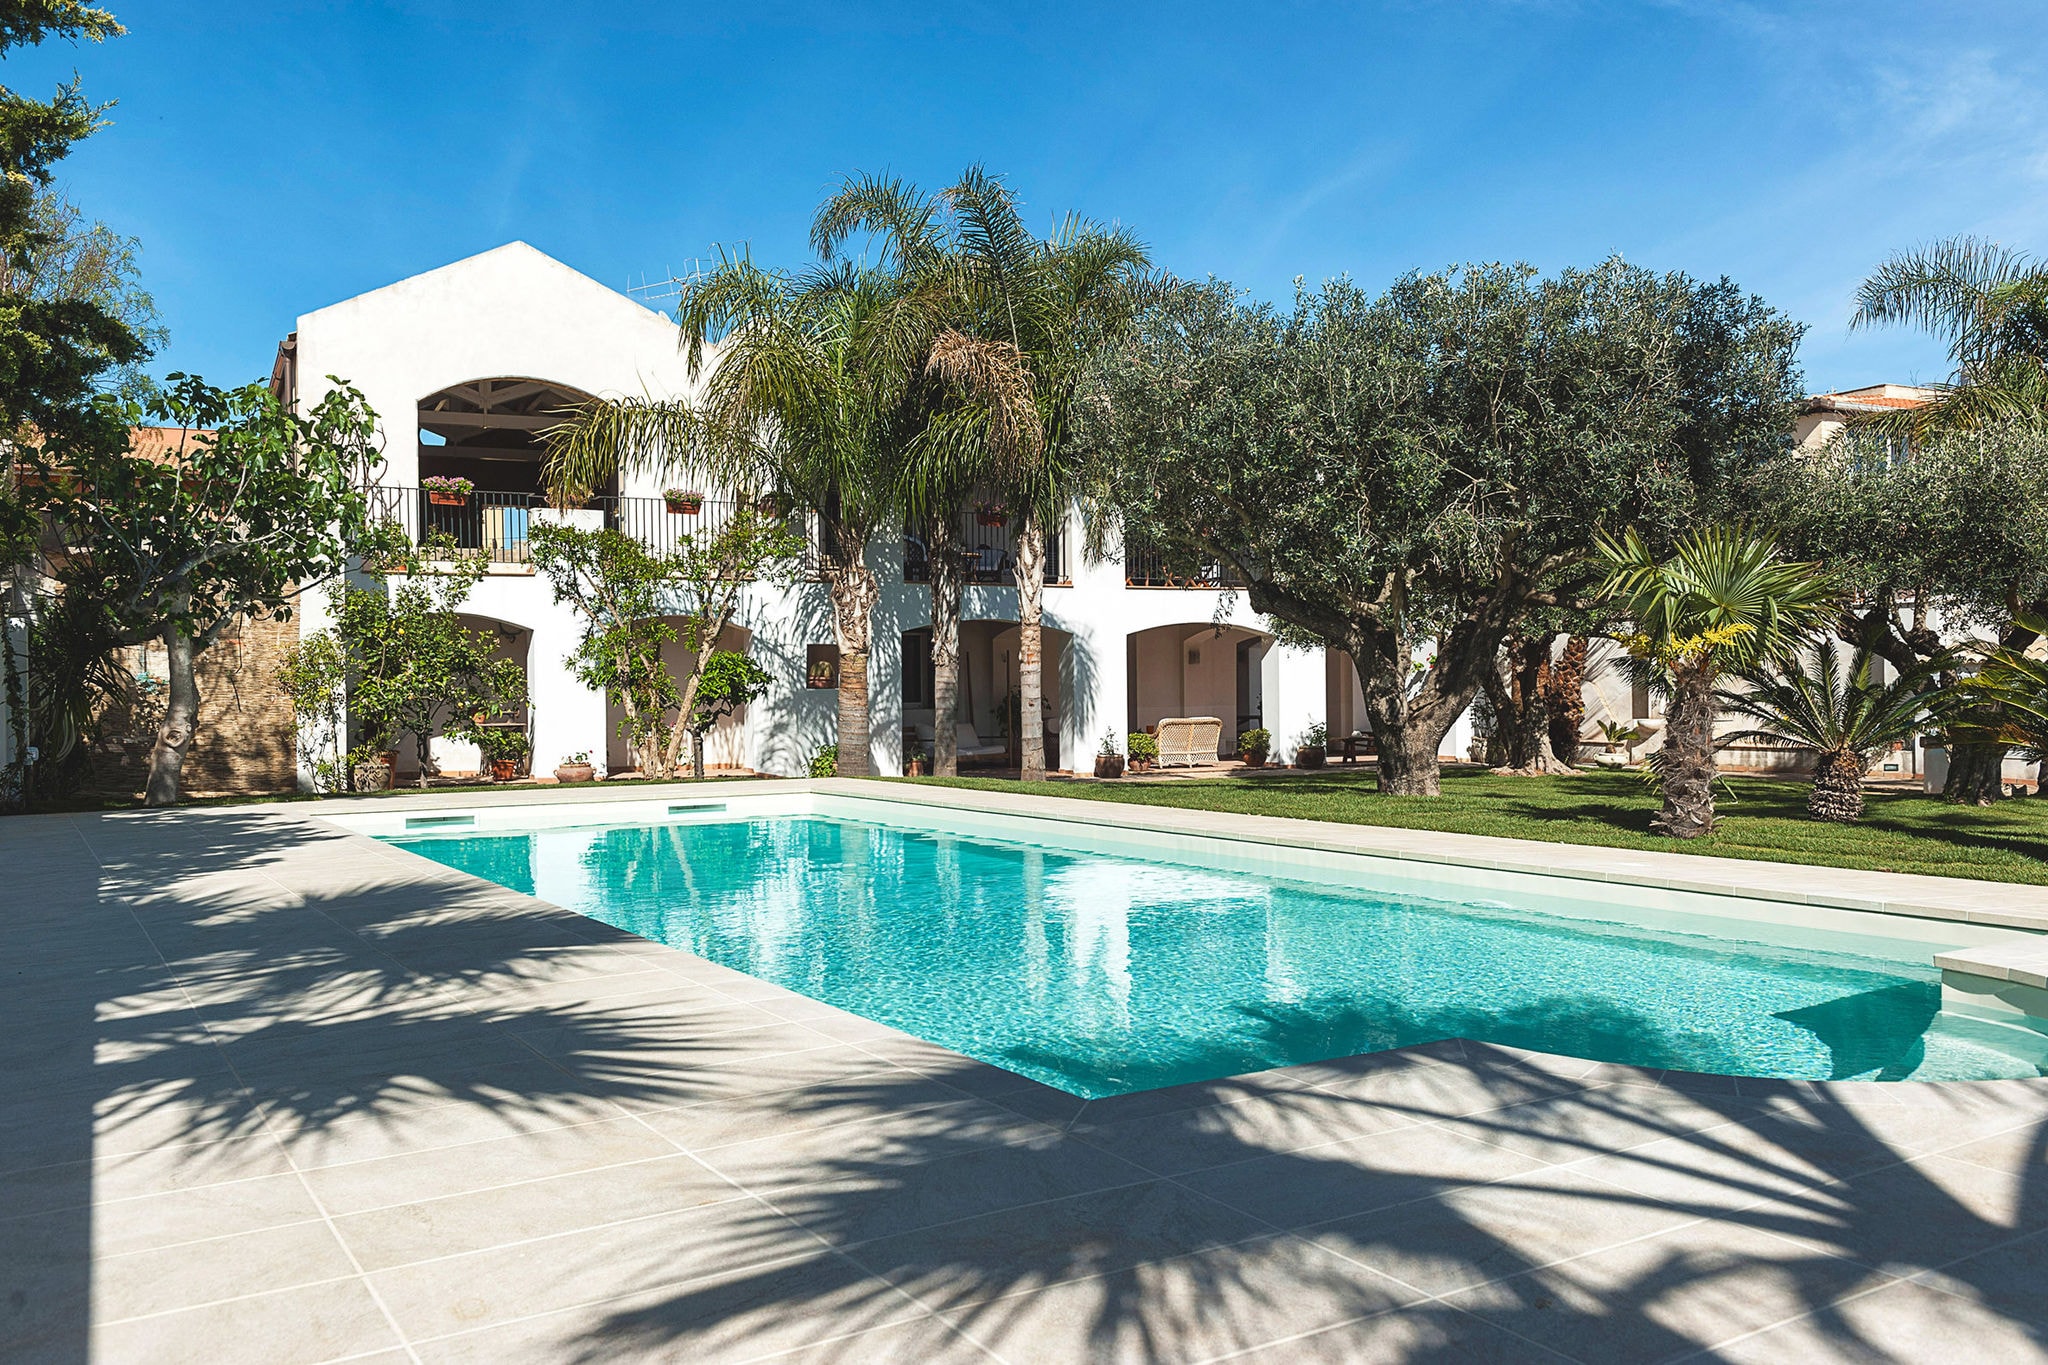 Elegant appartement in een villa, met zwembad en tuin, op enkele km van zee!